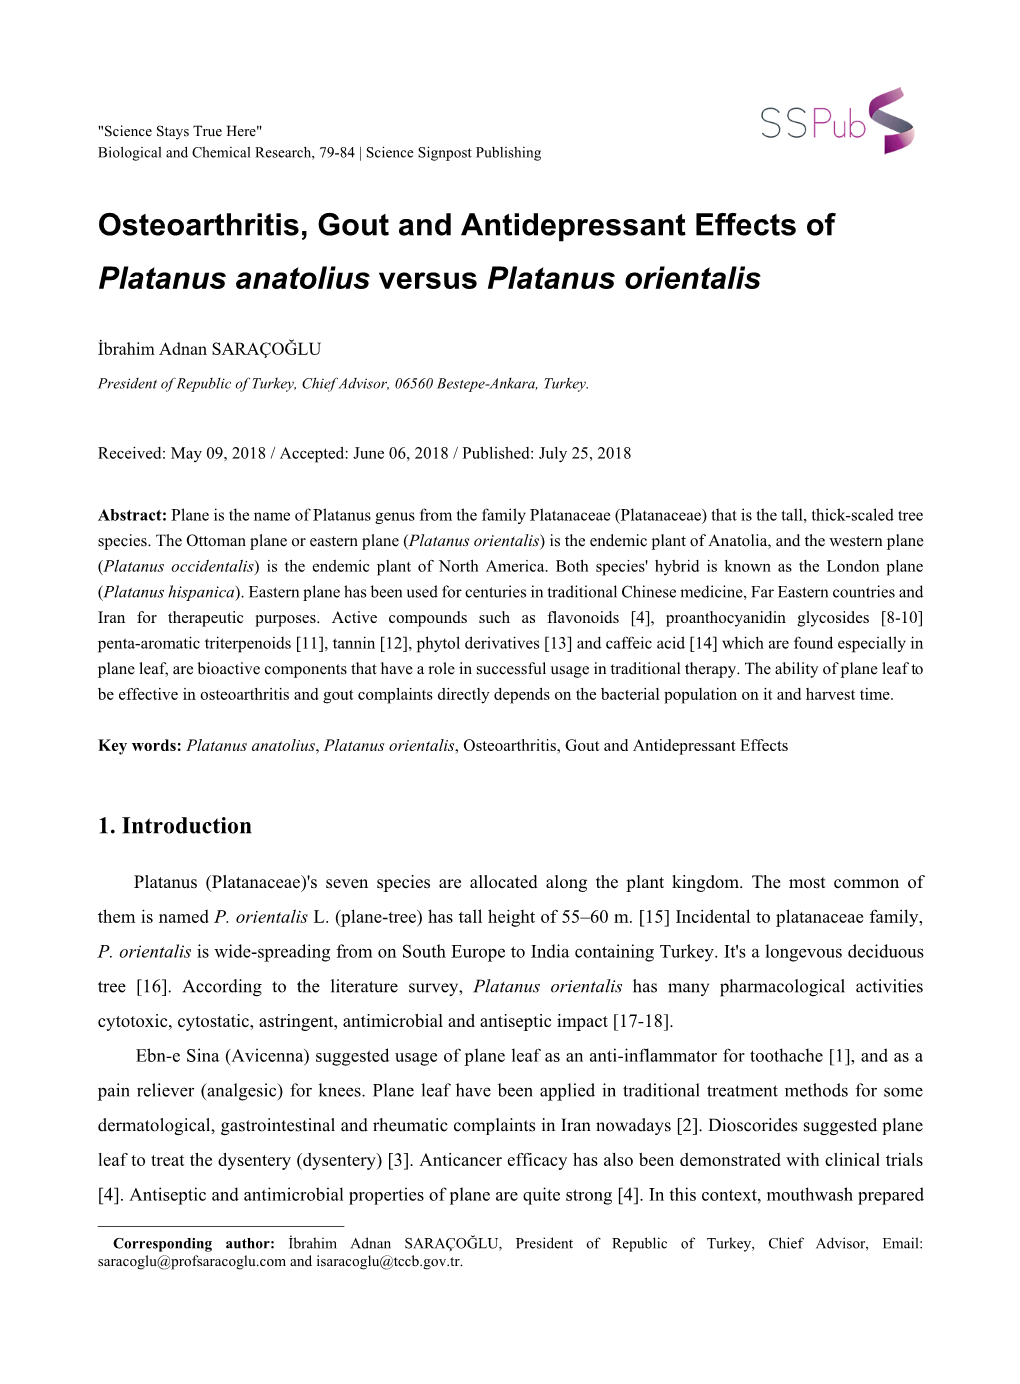 Osteoarthritis, Gout and Antidepressant Effects of Platanus Anatolius Versus Platanus Orientalis